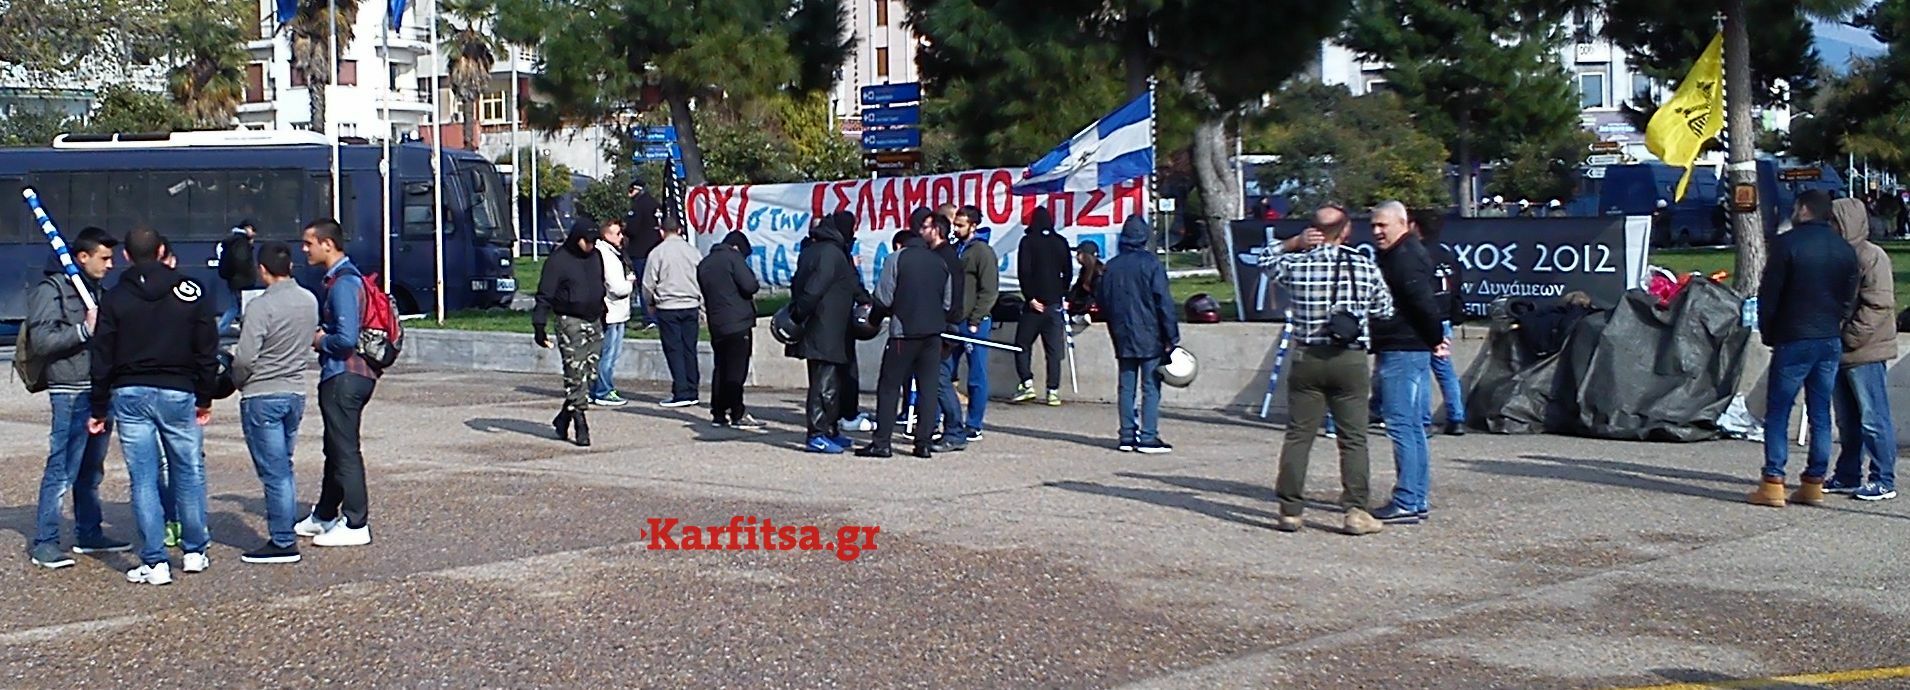 Συγκέντρωση στο Ωραιόκαστρο και αντισυγκέντρωση στο κέντρο της Θεσσαλονίκης!